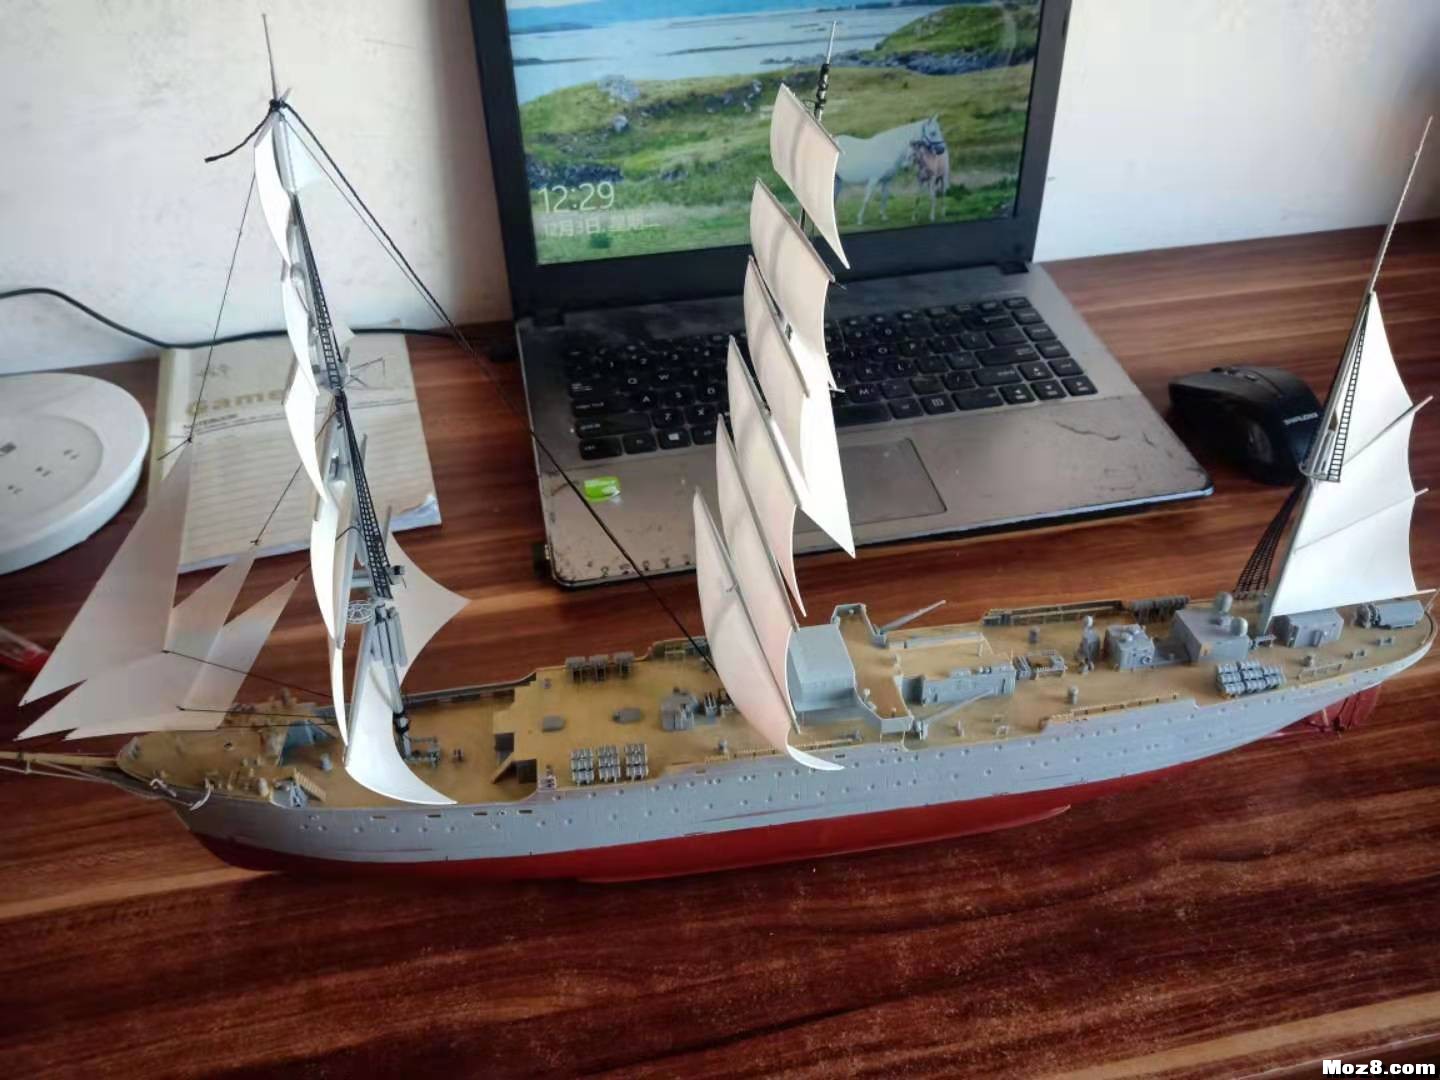 1/200模型船 手工轮船模型,轮船的模型 作者:沙发上的土豆 8322 